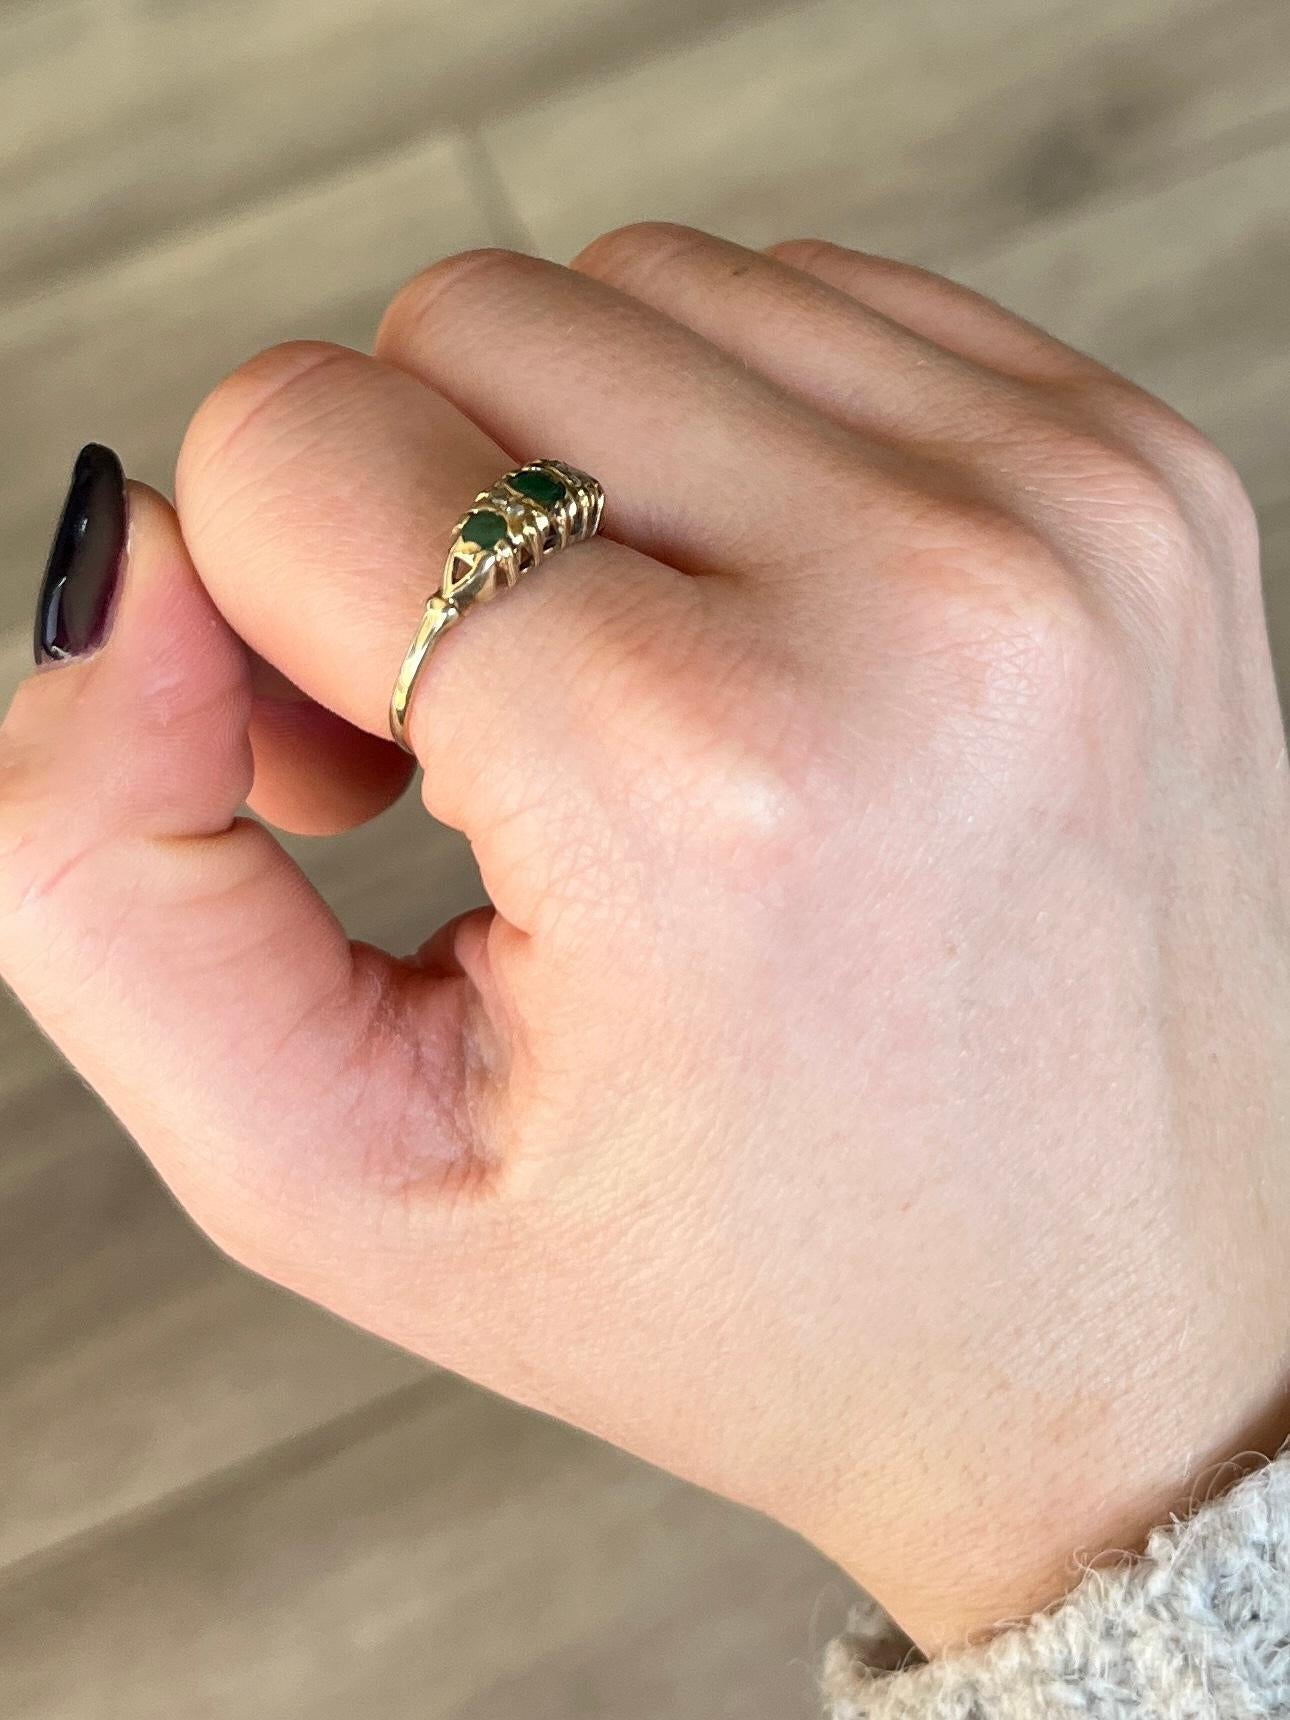 Las esmeraldas del anillo tienen un color maravilloso y entre ellas hay parejas de puntas de diamante. 

Tamaño del anillo: P 1/2 u 8 
Altura fuera del dedo: 4 mm

Peso: 1.6 g